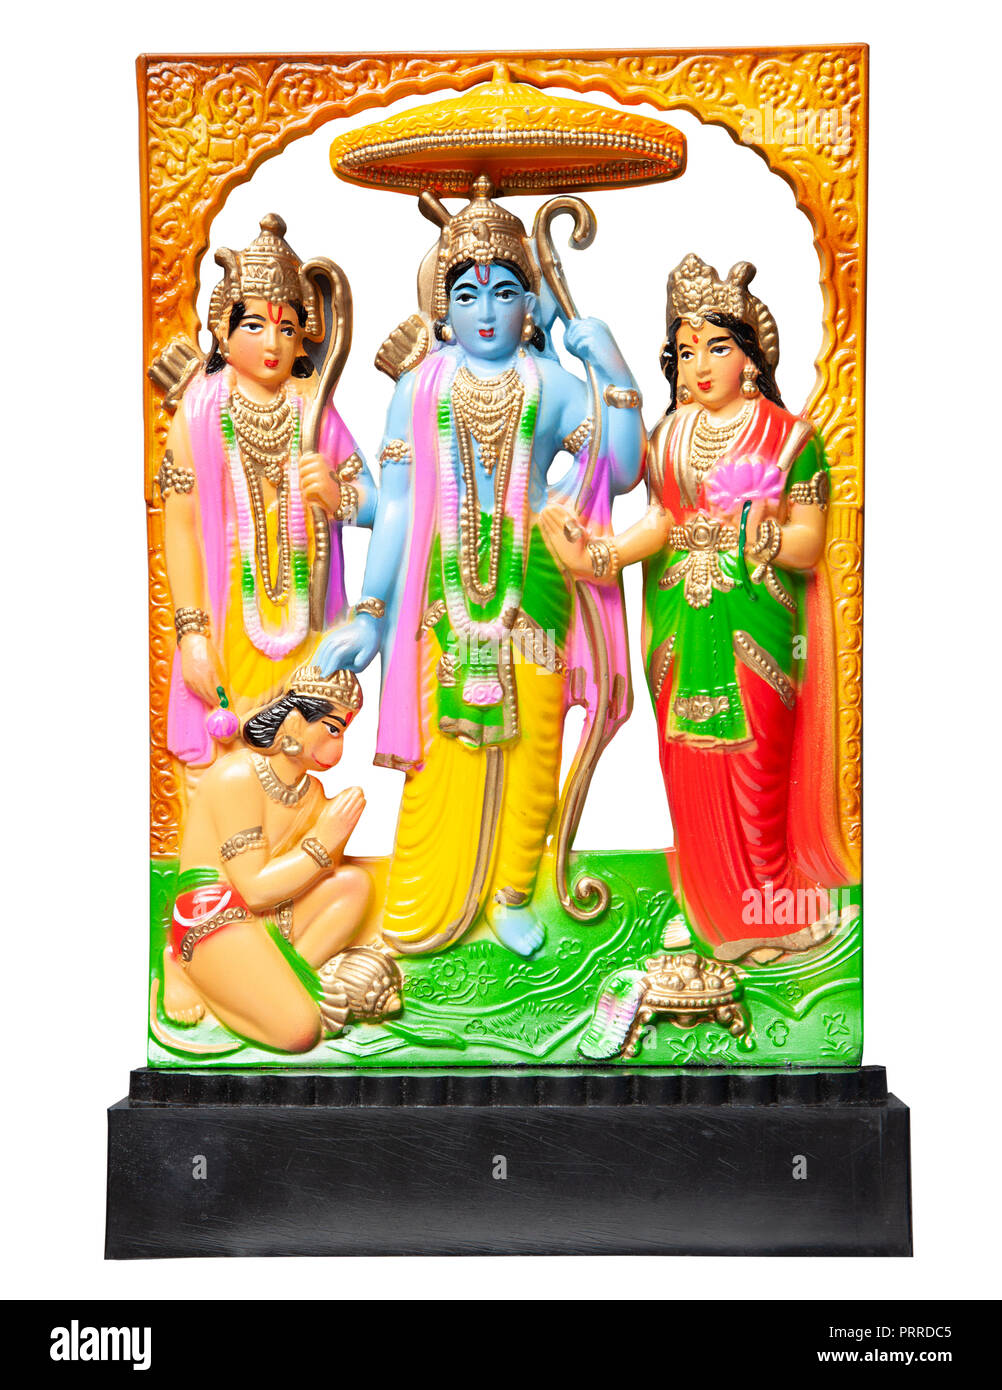 Autonoma di piccole dimensioni Ram Darbar scultura, un religioso indù artefatto con Sri Ram, Sita, Lakshman e Hanuman la scimmia dio. Dall'epica Ramayana. Foto Stock